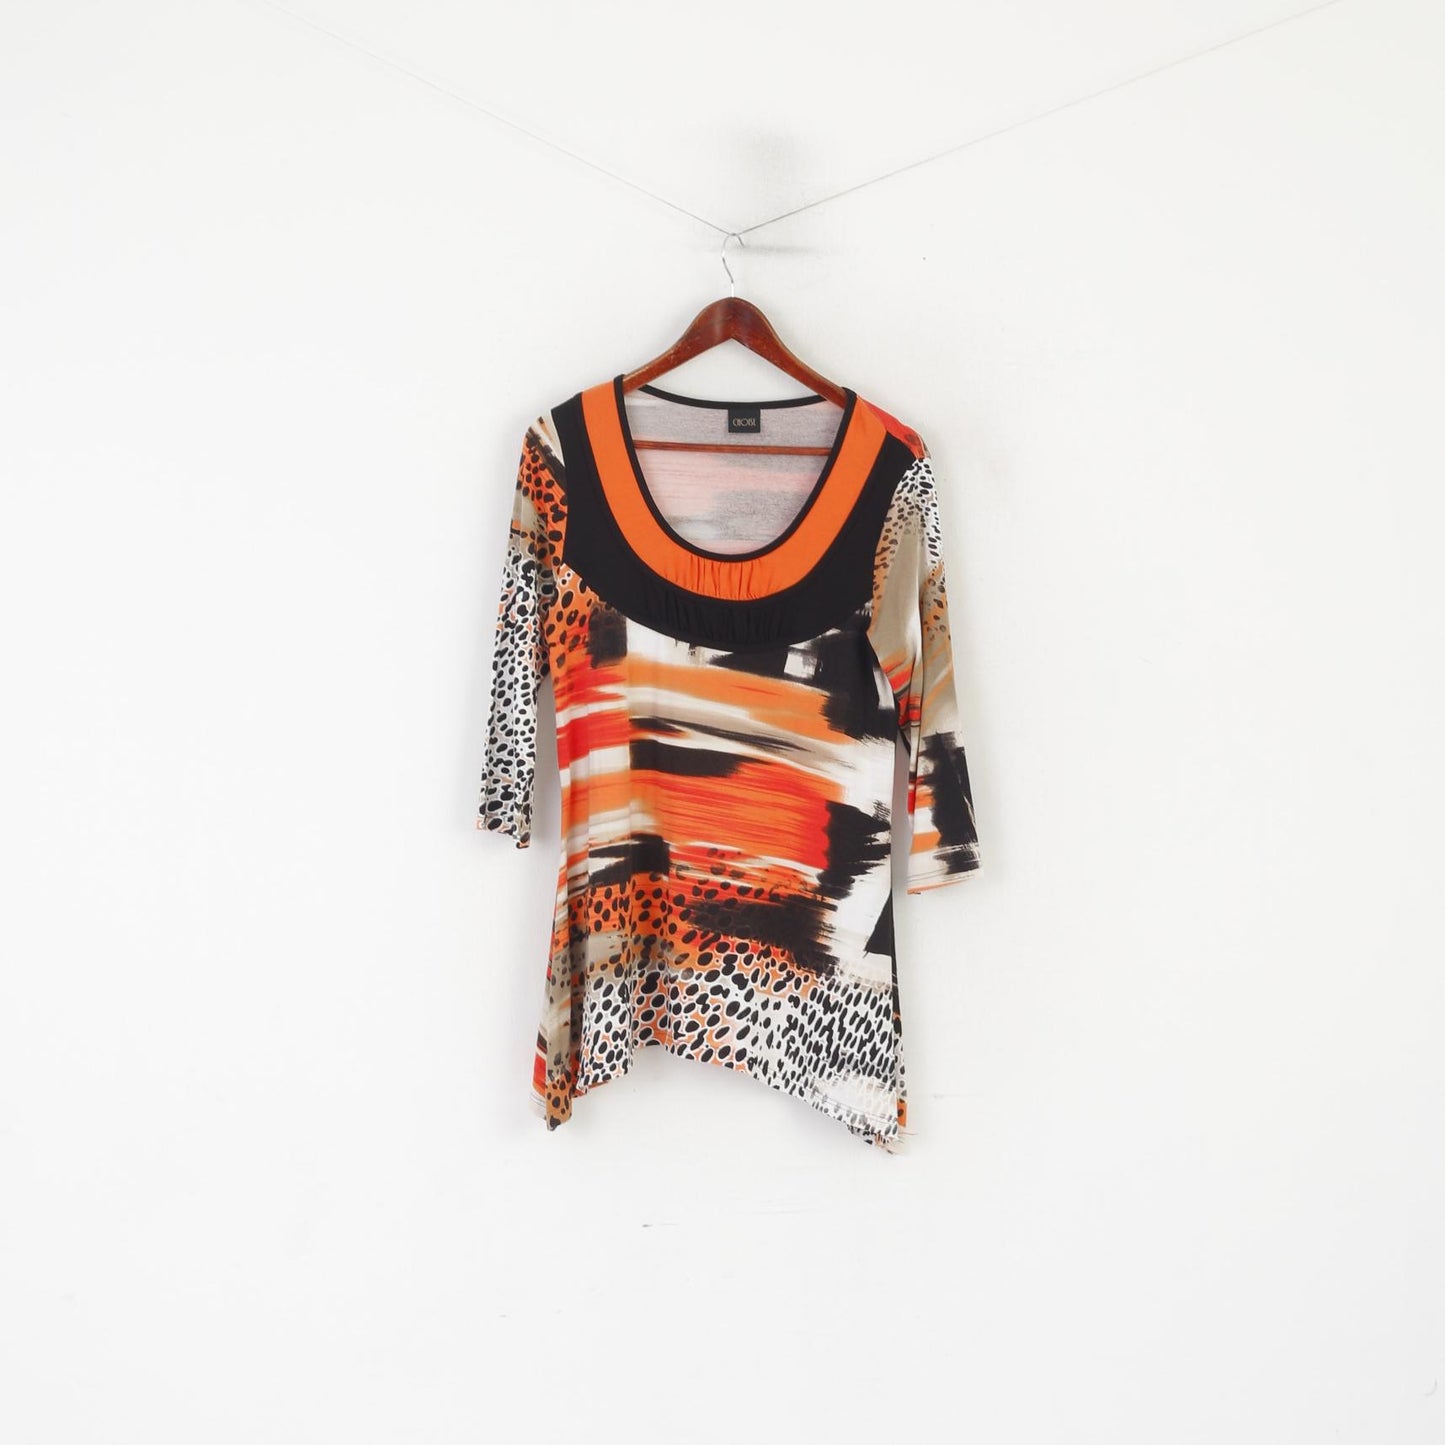 Camicia da donna M Choise Tunica girocollo in viscosa elasticizzata arancione nera